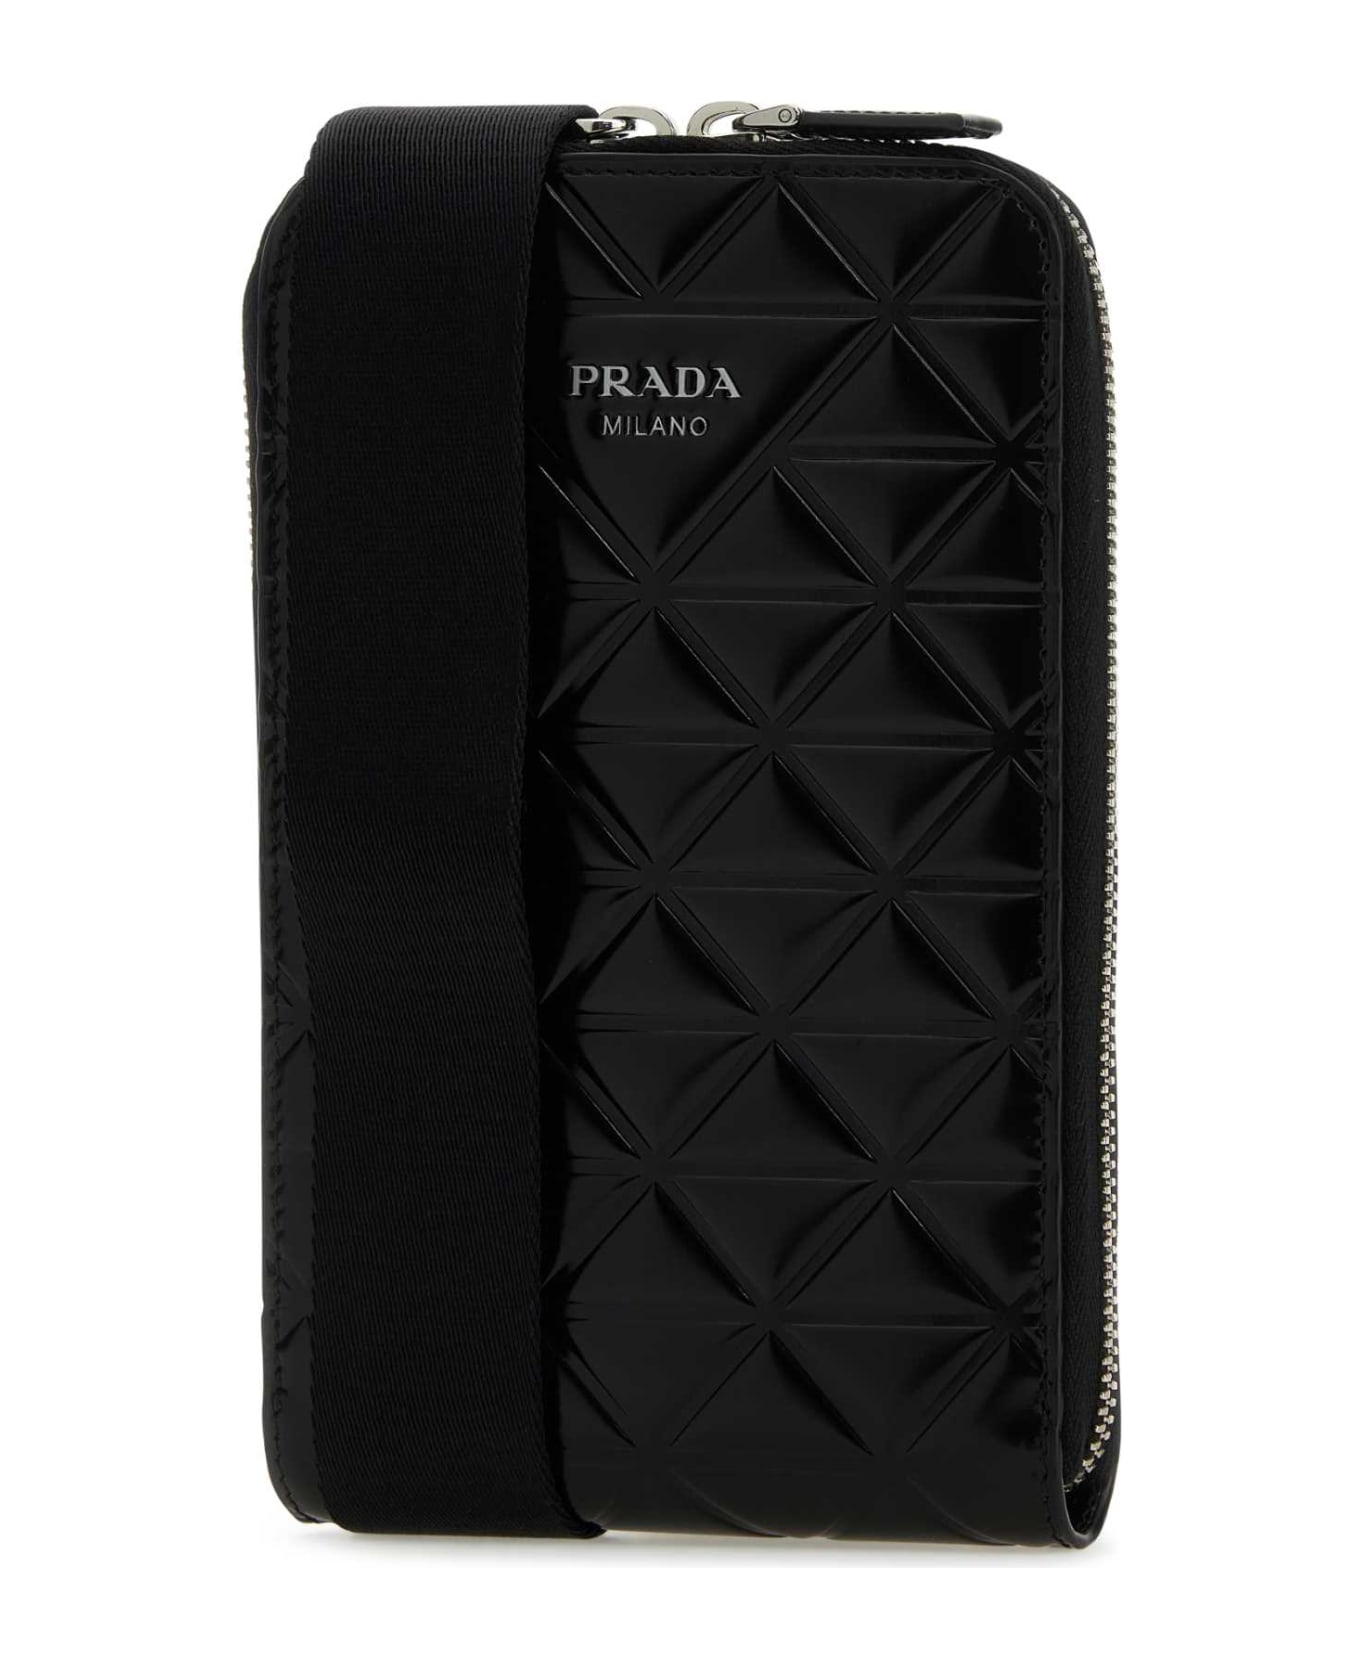 Prada Black Leather Phone Case - NERO